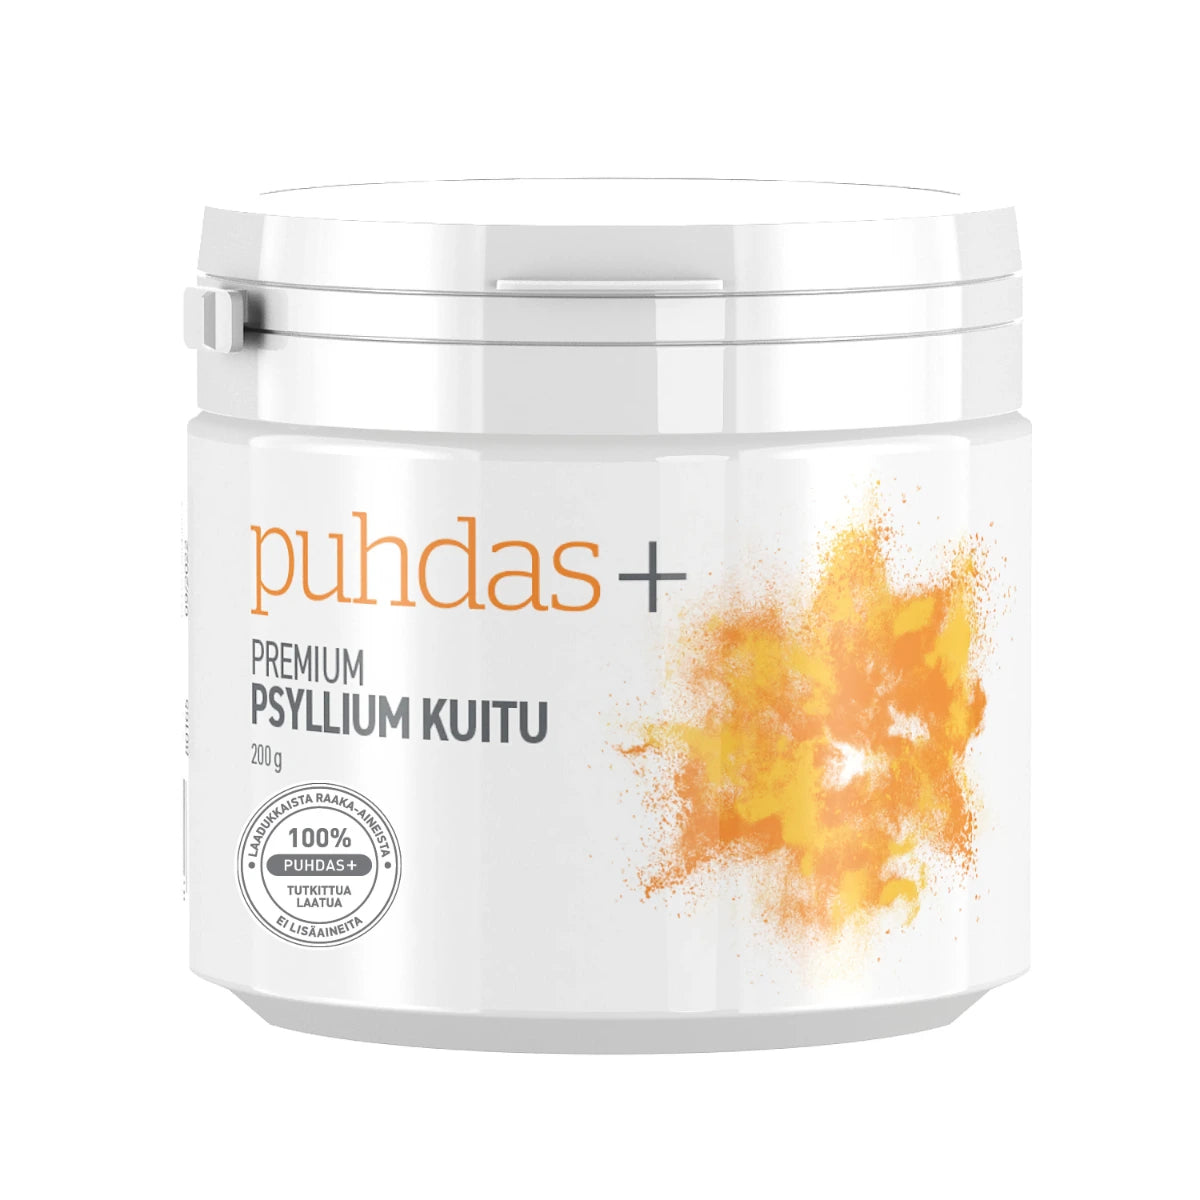 PUHDAS+ Premium psyllium kuitu 180 g